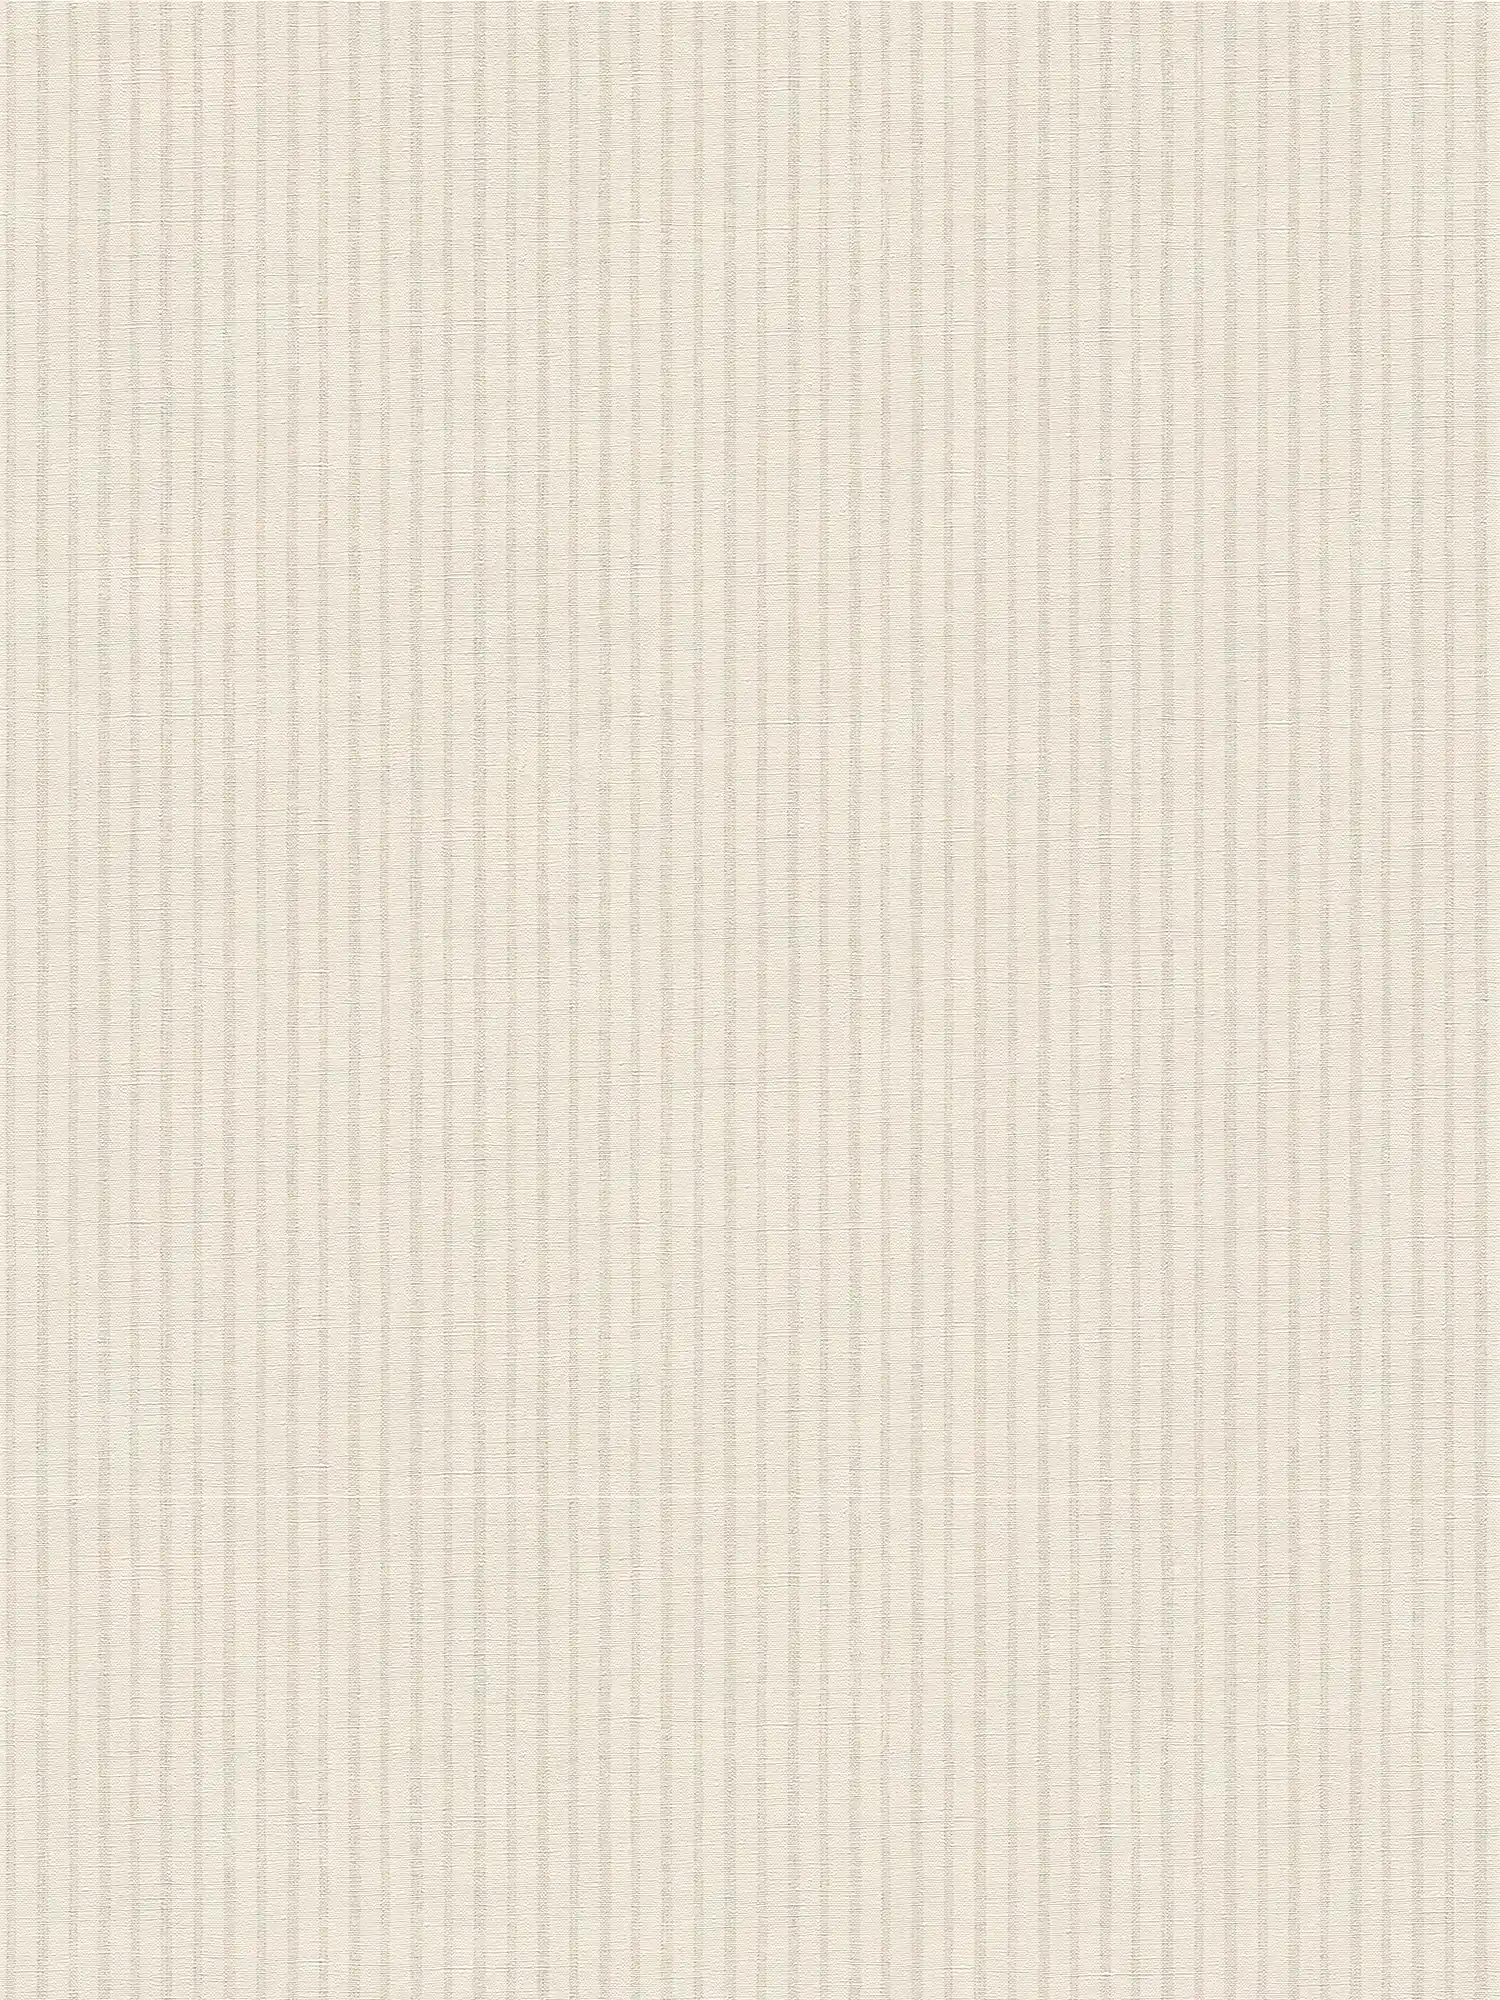 Papier peint intissé à rayures subtiles style maison de campagne - blanc, gris
